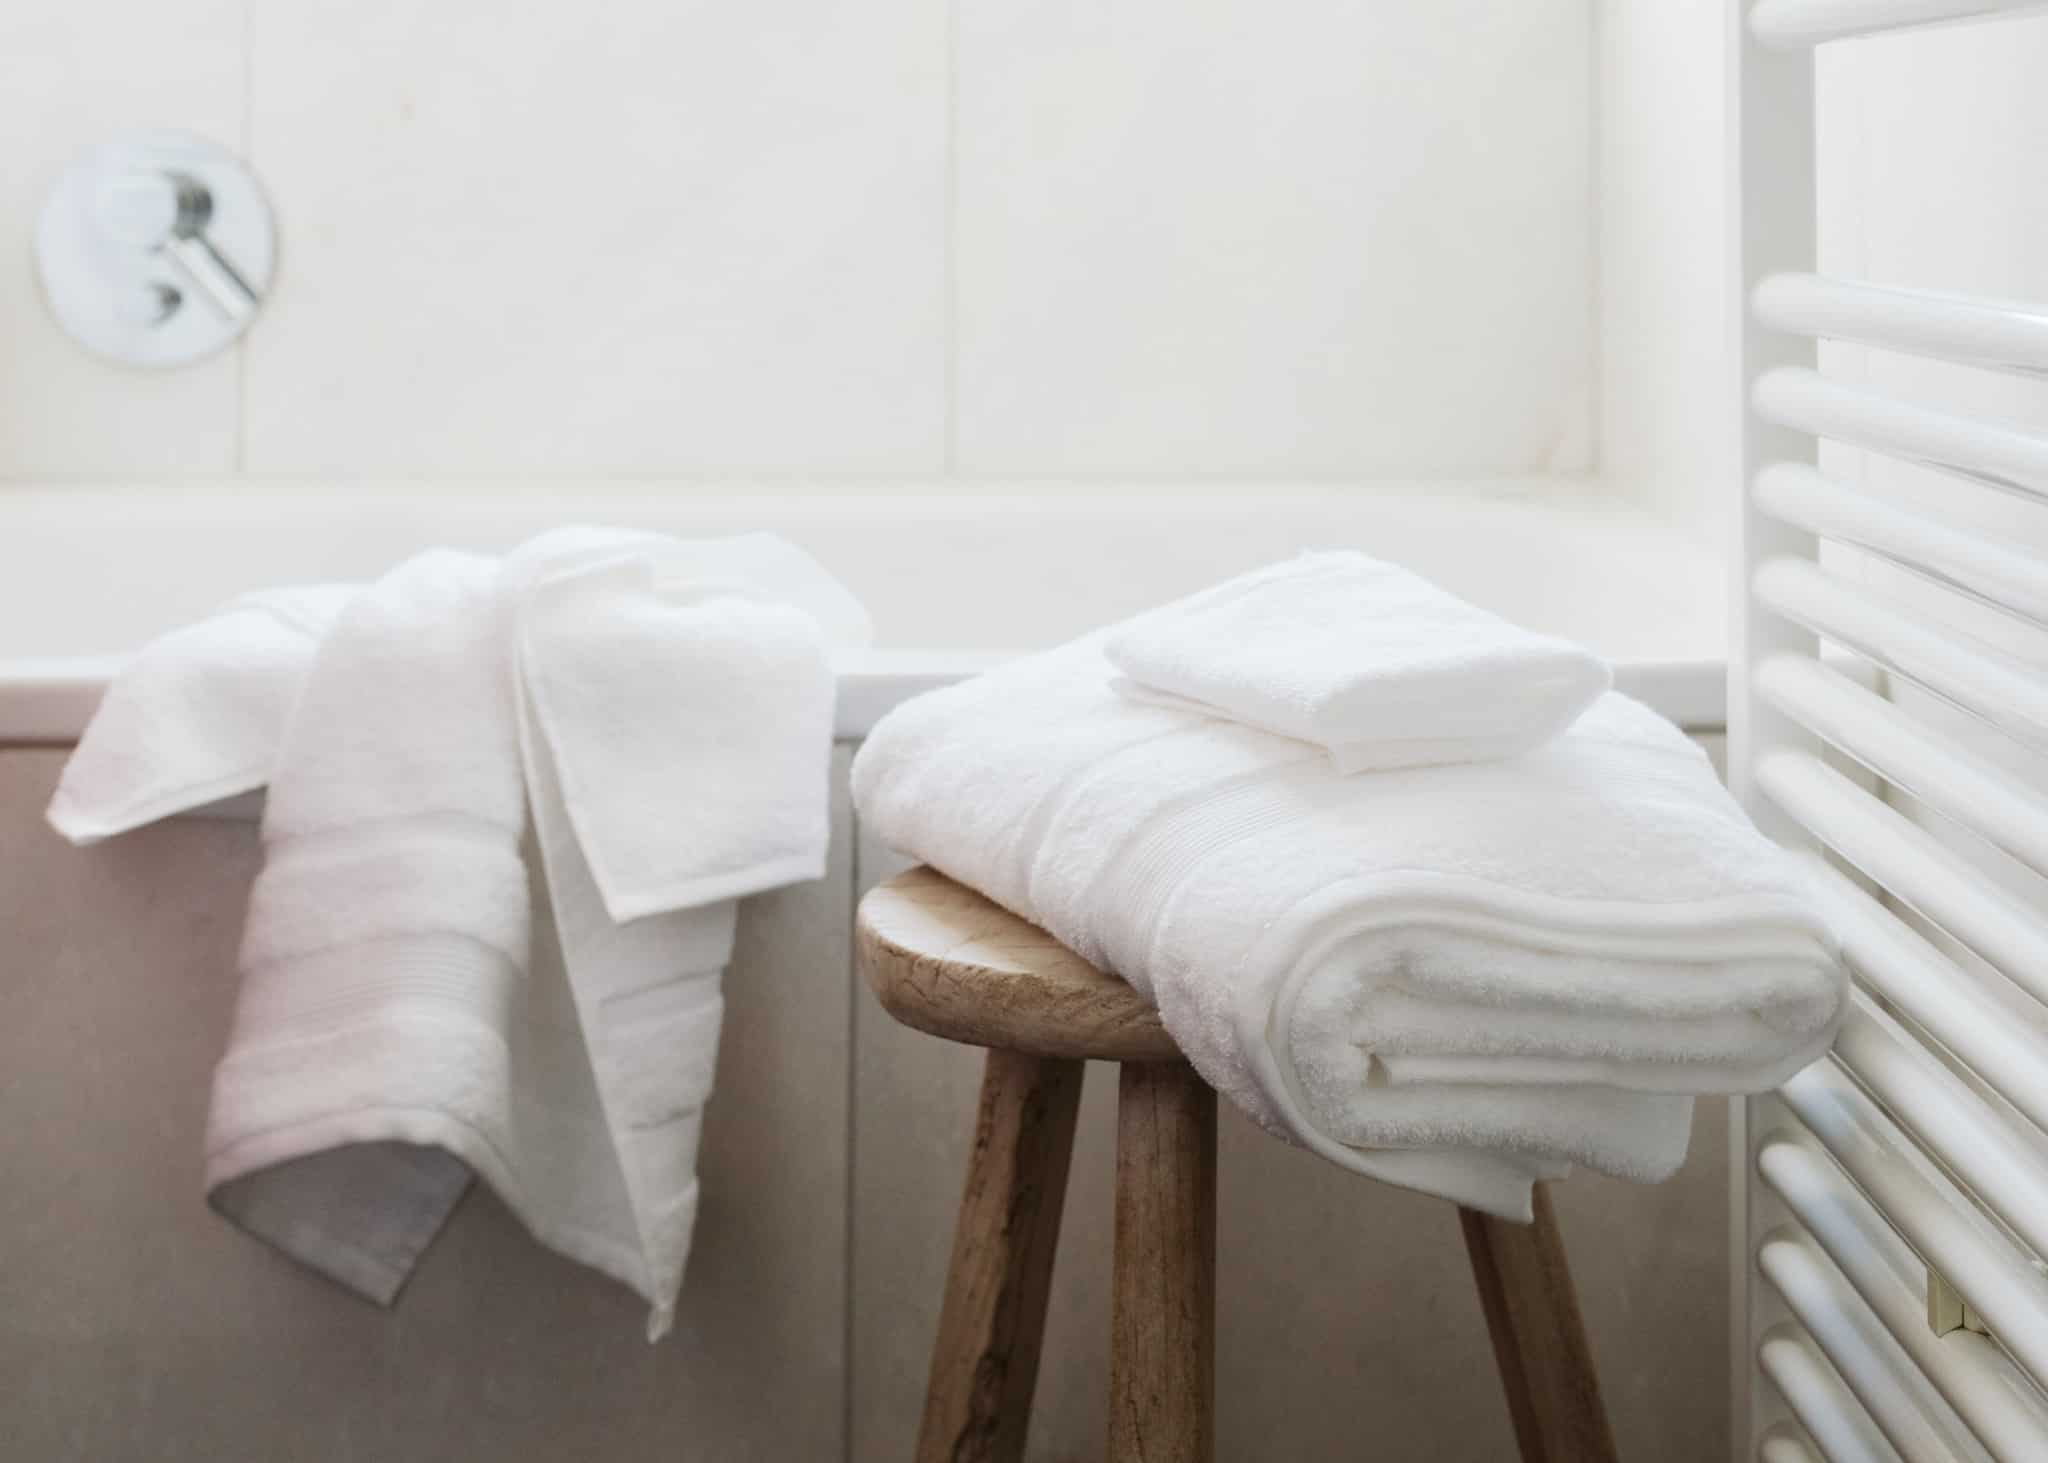 Hochwertige Badetücher sorgen für eine kuschelige Entspannung nach dem Bad. (Bild: Marso Living)